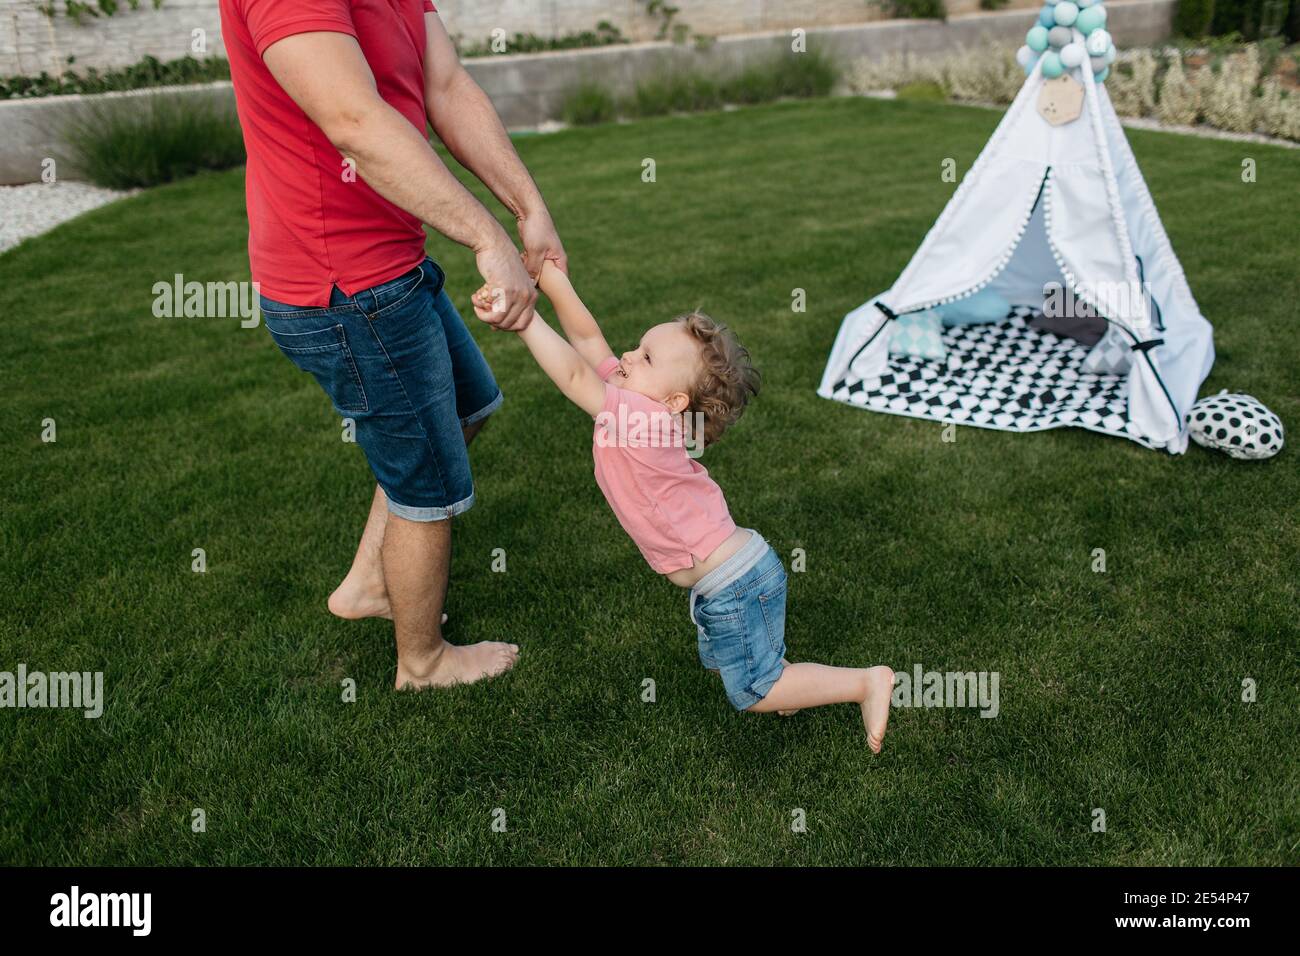 Vater dreht seinen kleinen Sohn draußen im Garten. Glückliches Kind, das Spaß mit seinem Vater hat. Stockfoto